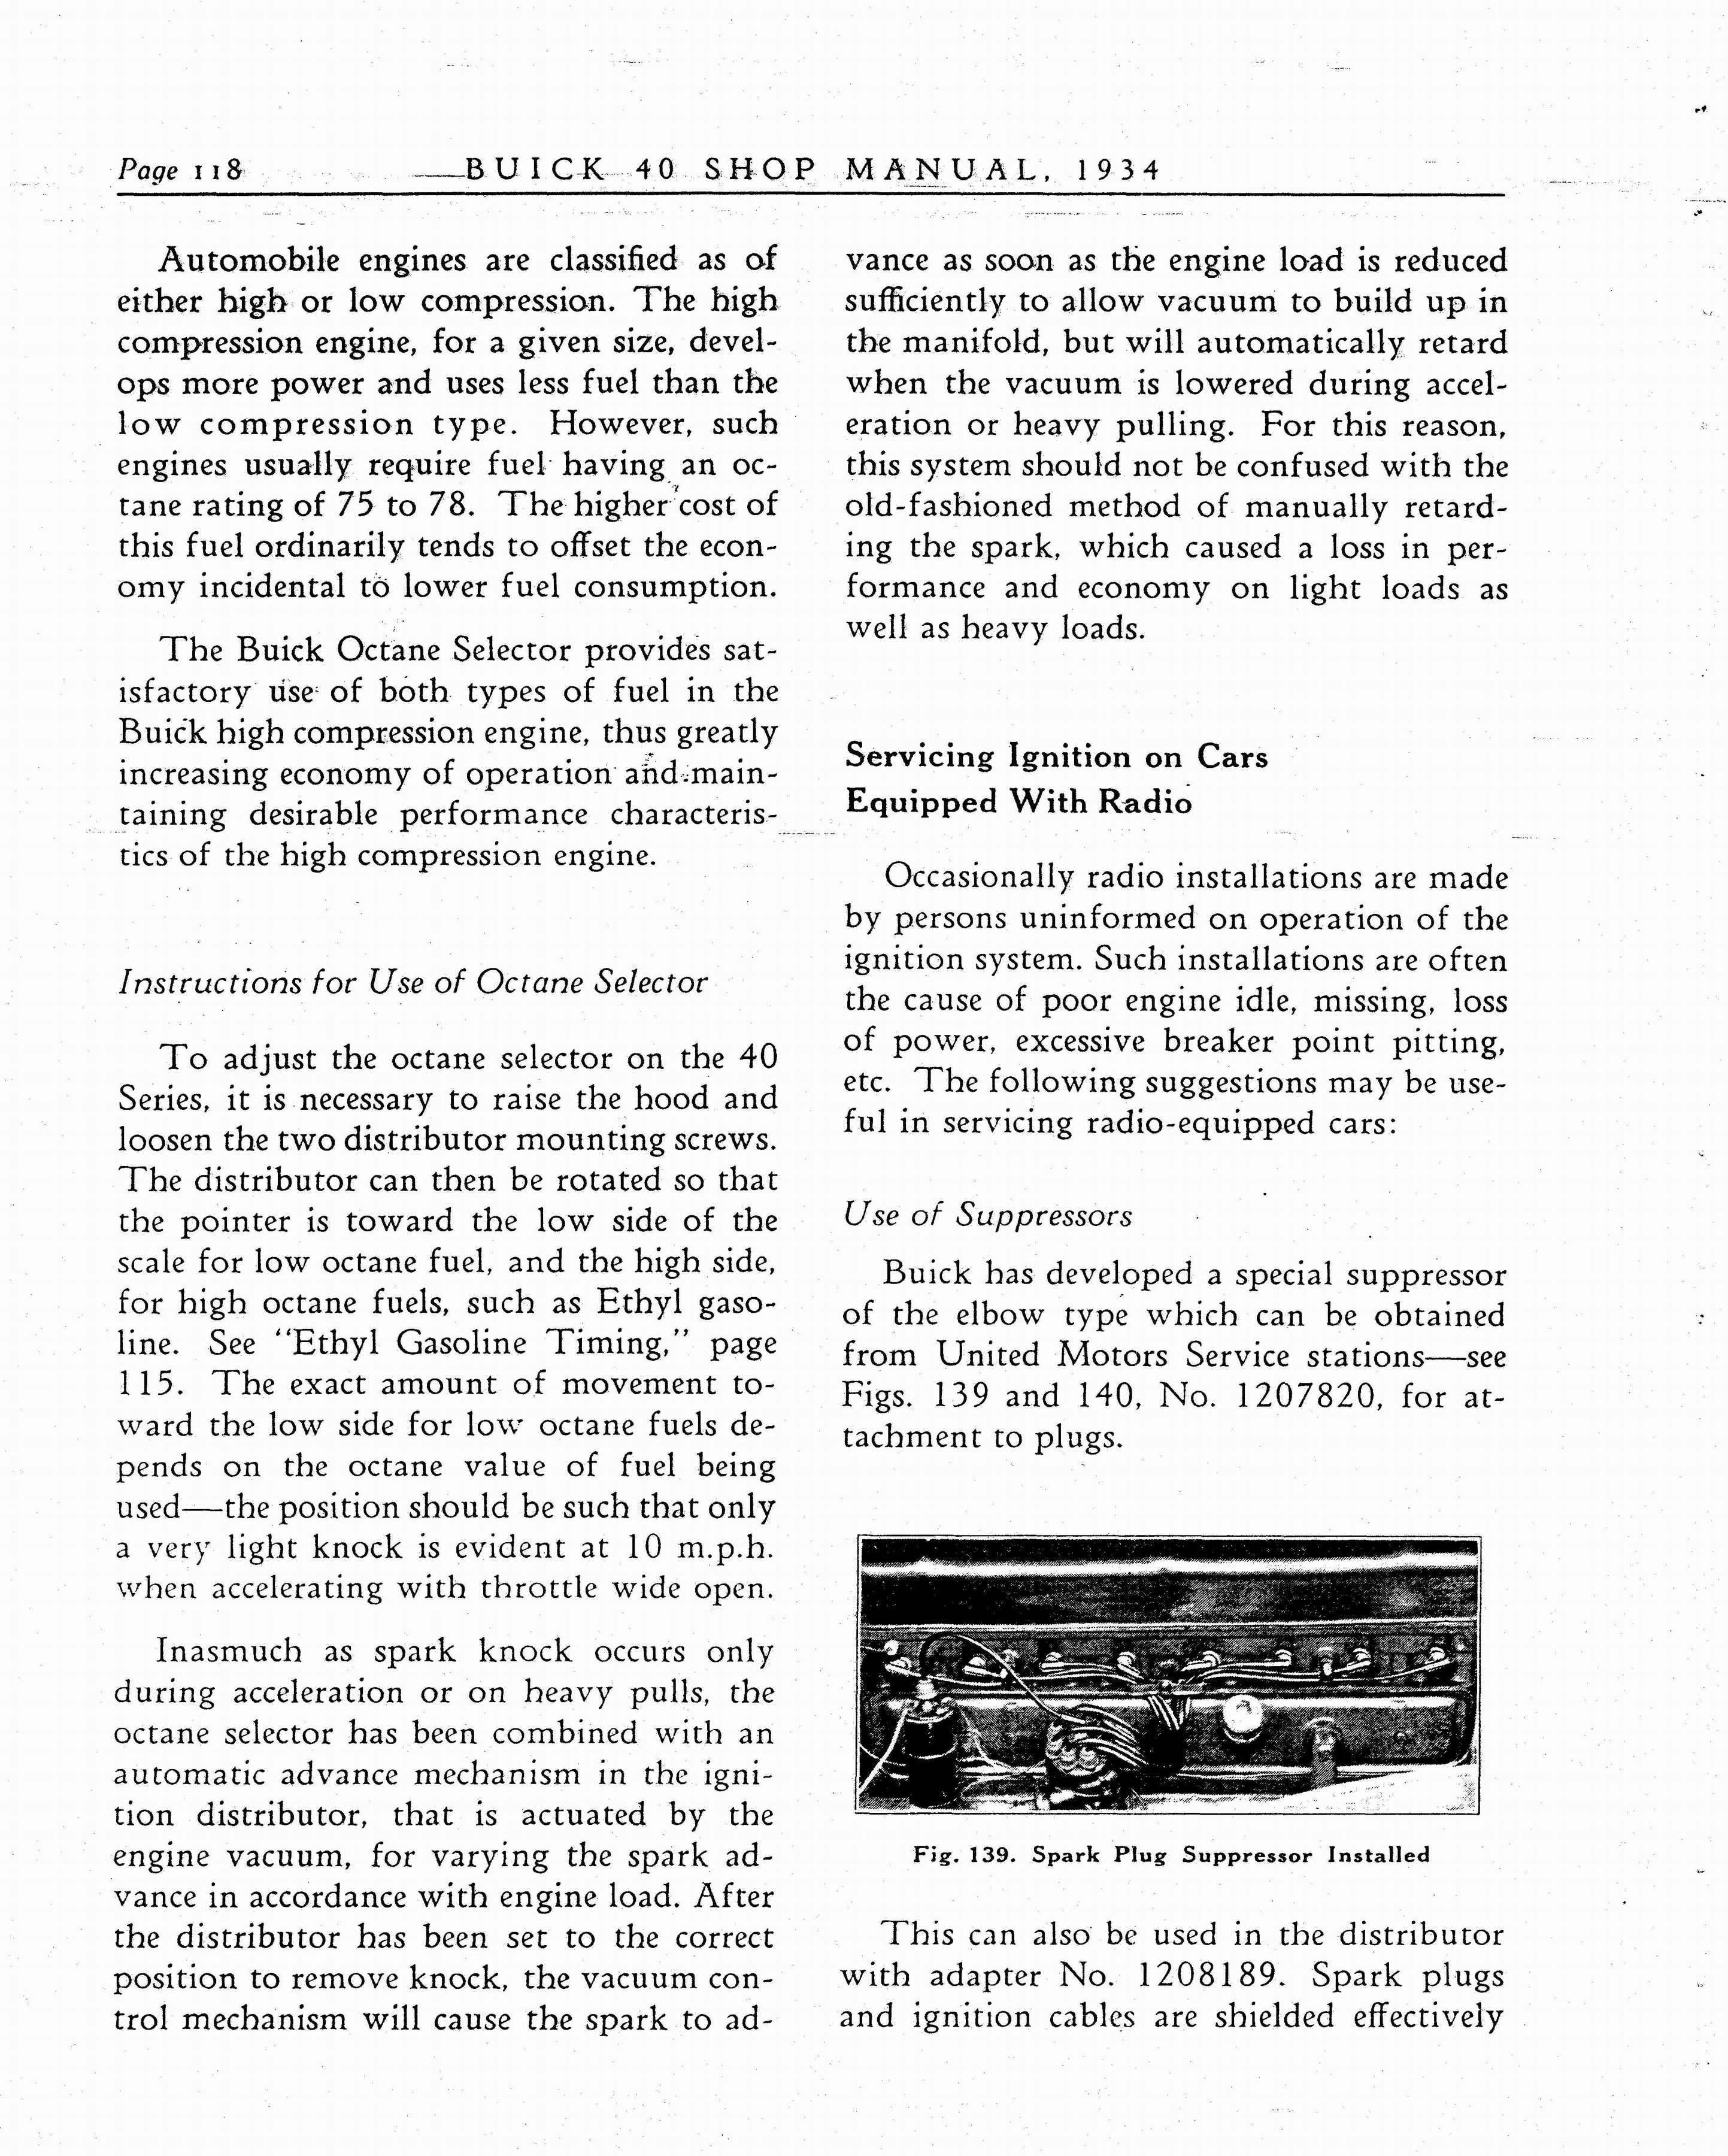 n_1934 Buick Series 40 Shop Manual_Page_119.jpg